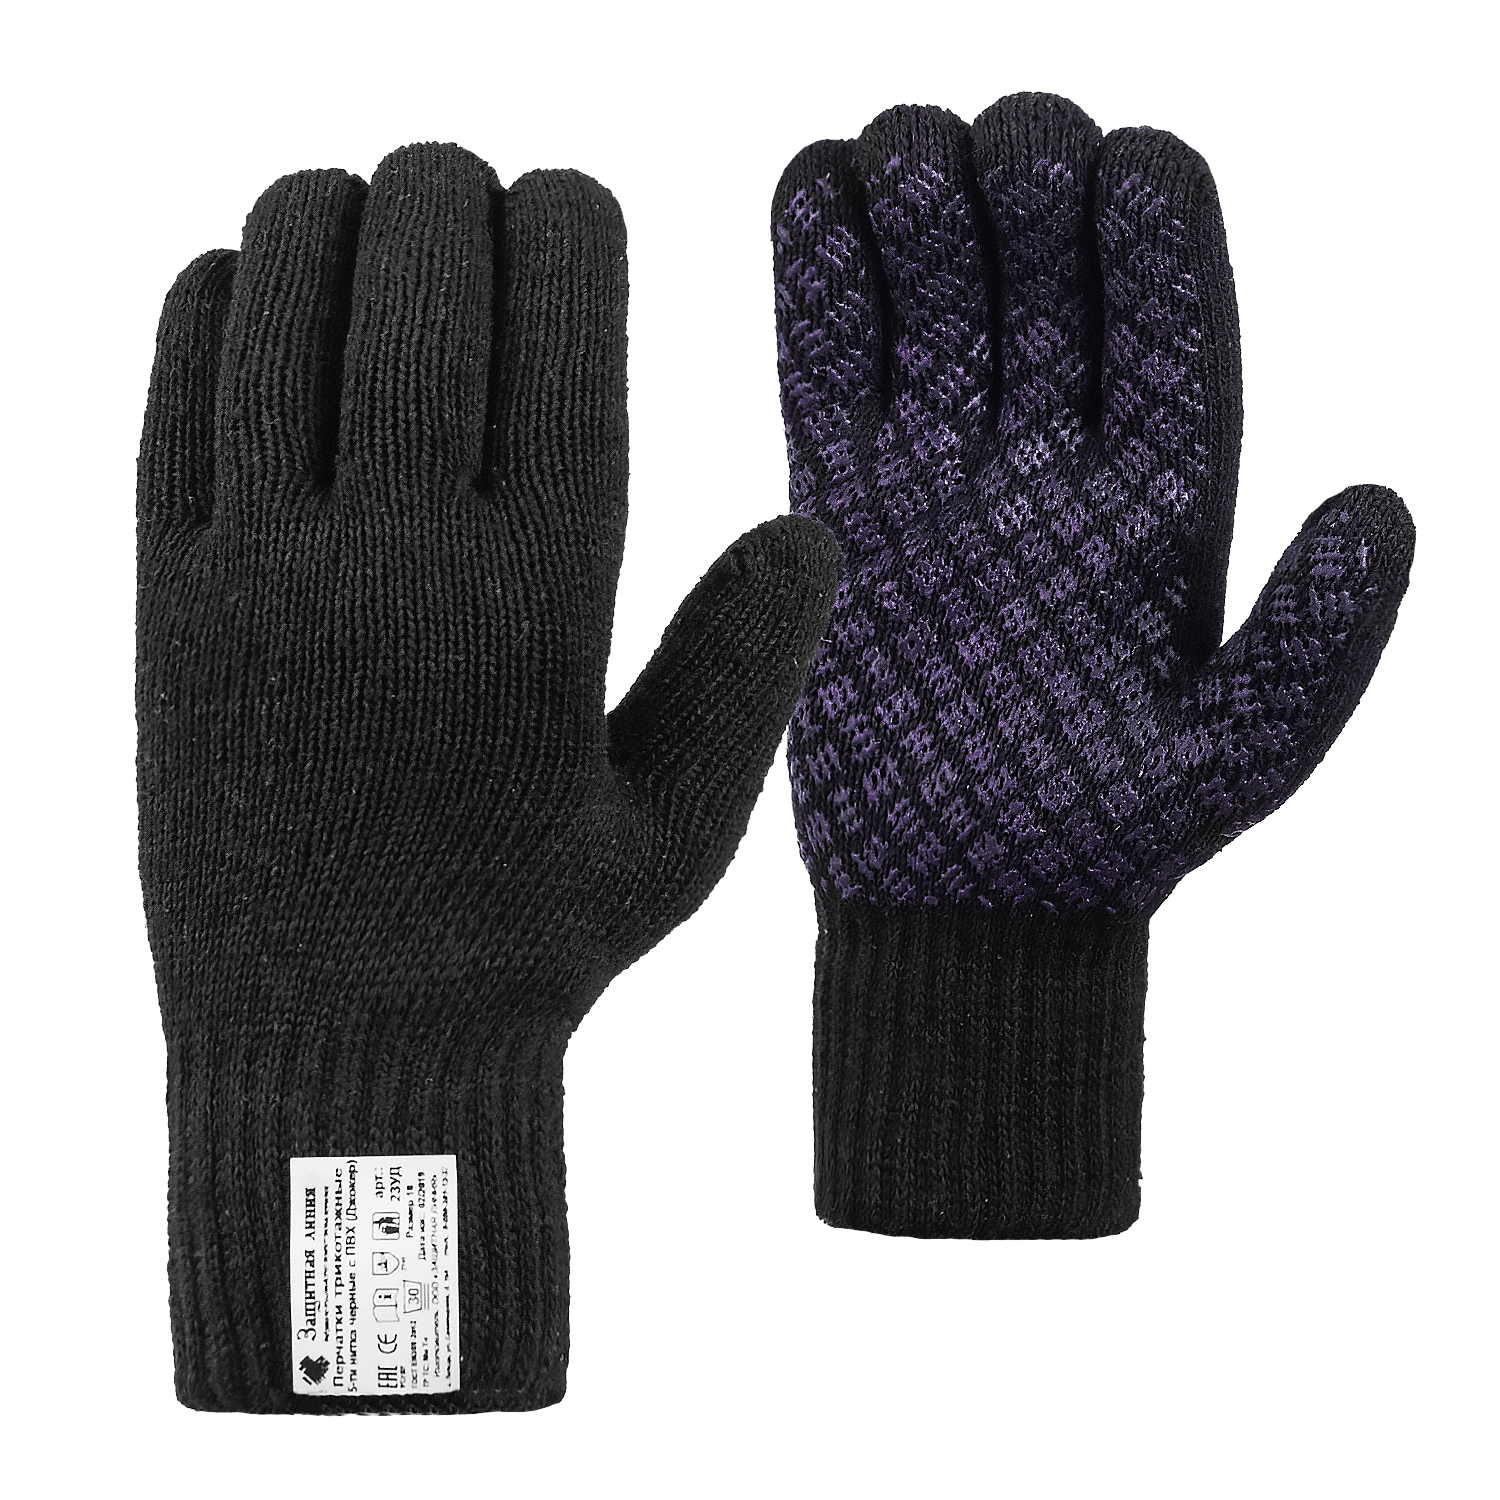 Рабочие перчатки хлопчатобумажные «СУПЕР ЛЮКС» с ПВХ (джокер), черные, 7.5 класс, по ГОСТ с маркировкой